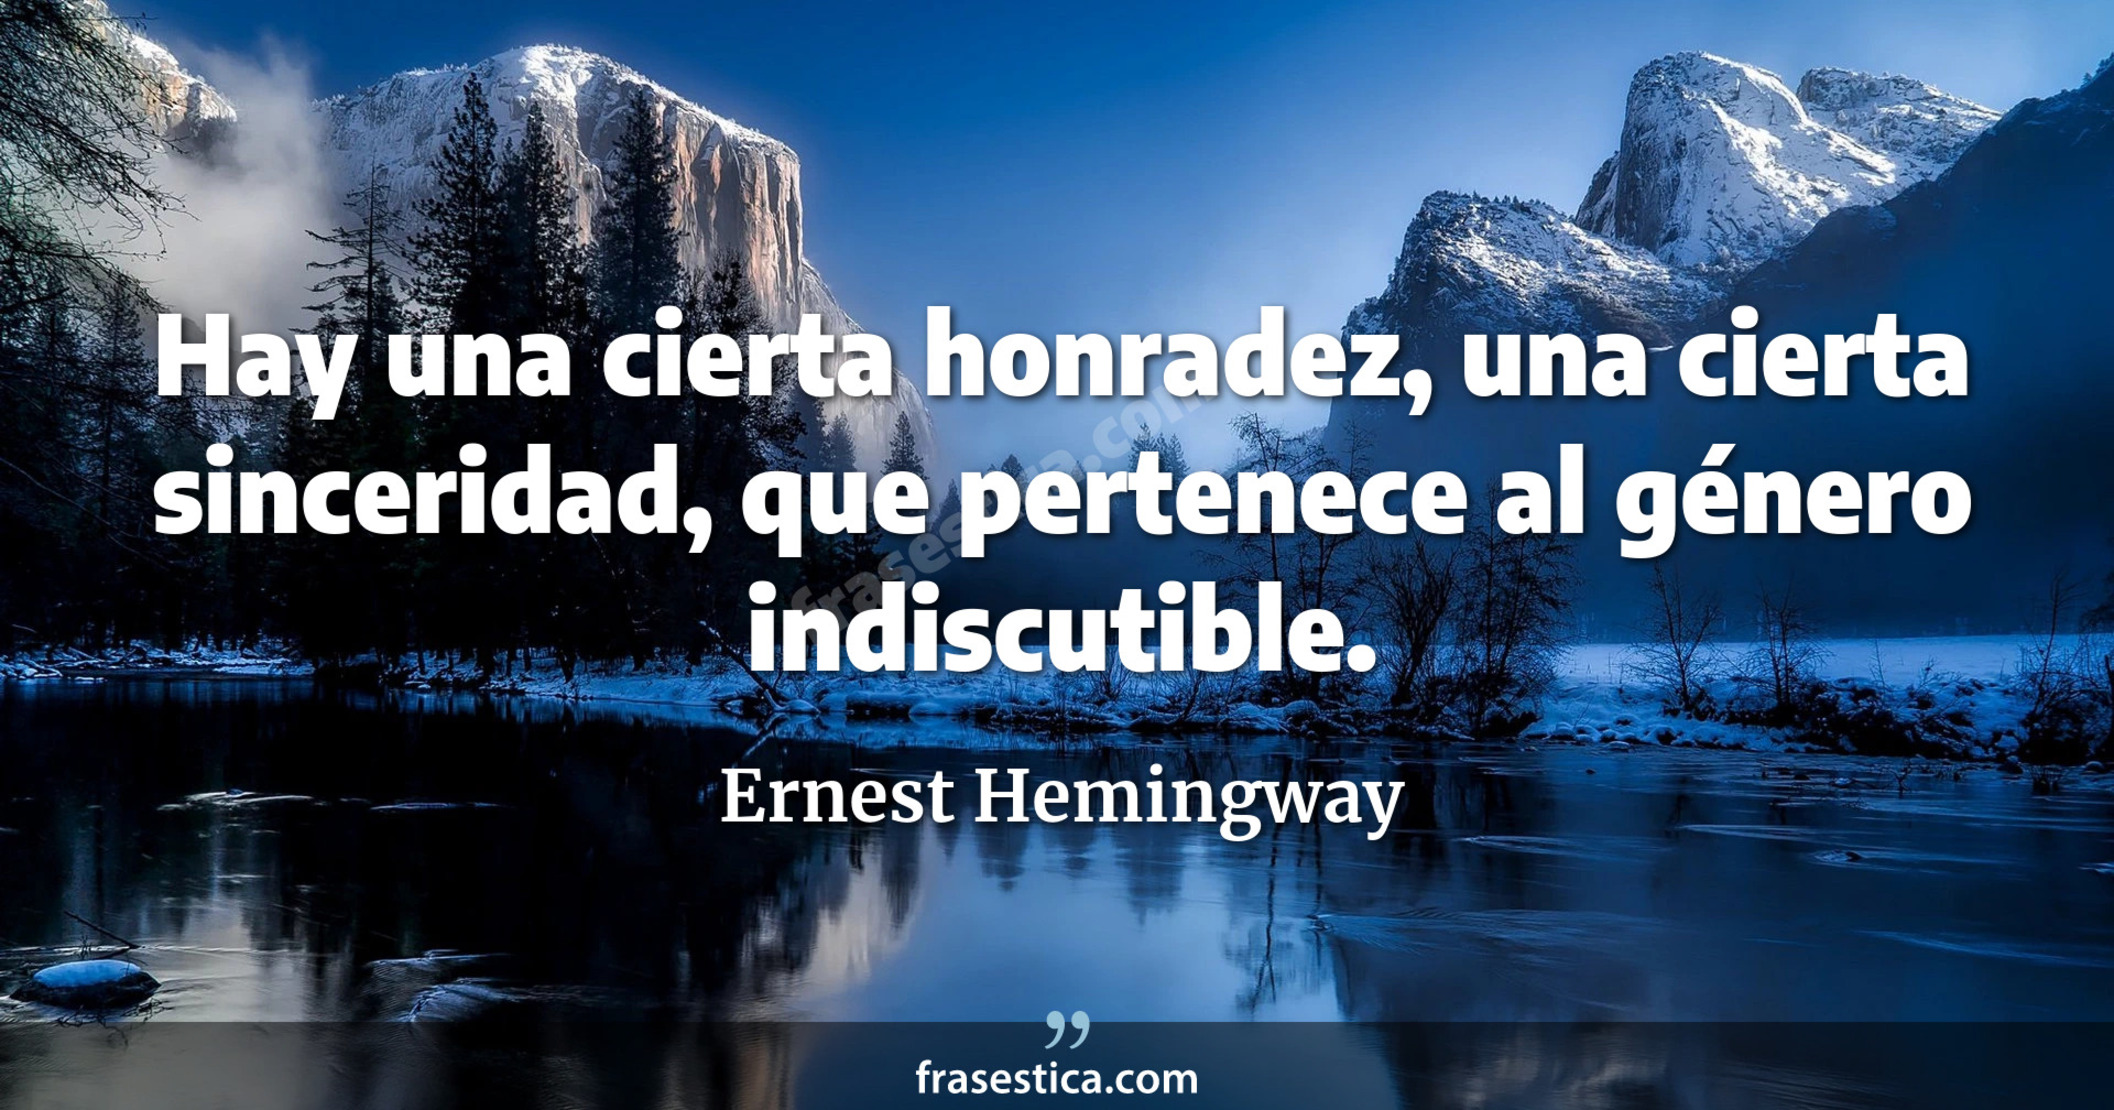 Hay una cierta honradez, una cierta sinceridad, que pertenece al género indiscutible. - Ernest Hemingway